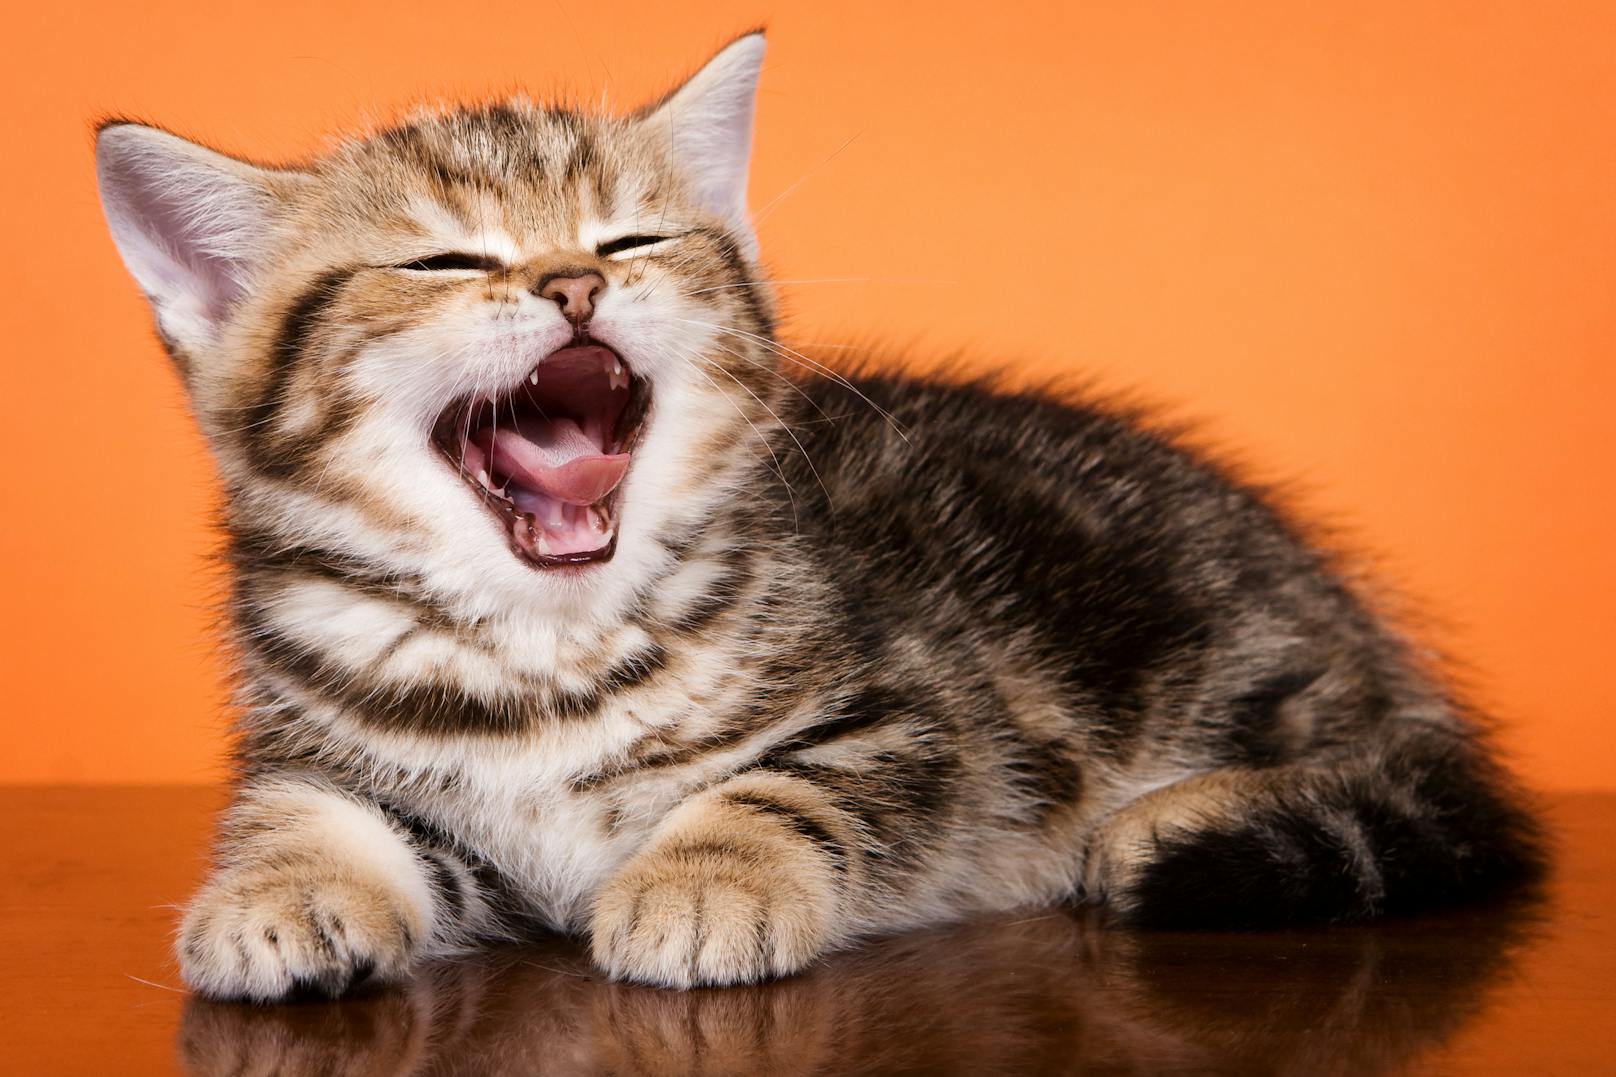 Das durchschnittliche Gähnen einer Katze dauert 2,1 Sekunden.